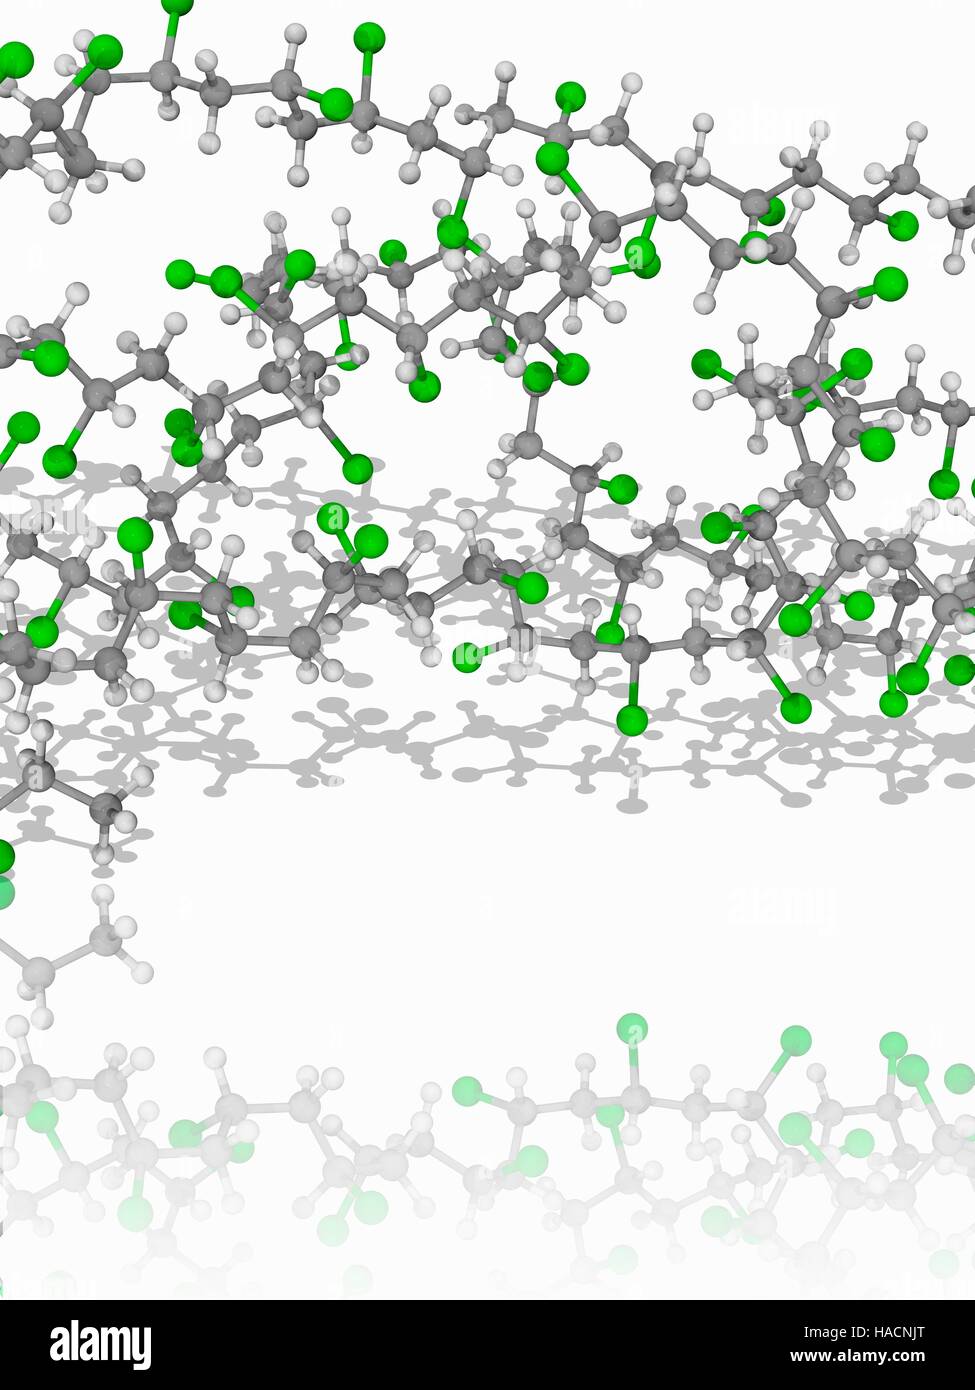 Polyvinylchlorid. Molekulares Modell des synthetischen Polymer Polyvinylchlorid (PVC), bestehend aus langen Ketten von Monomer Vinylchlorid (C2.H3.Cl). Atome als Kugeln dargestellt werden und sind farblich gekennzeichnet: Kohlenstoff (grau), Wasserstoff (weiß) und Chlor (grün). Abbildung. Stockfoto